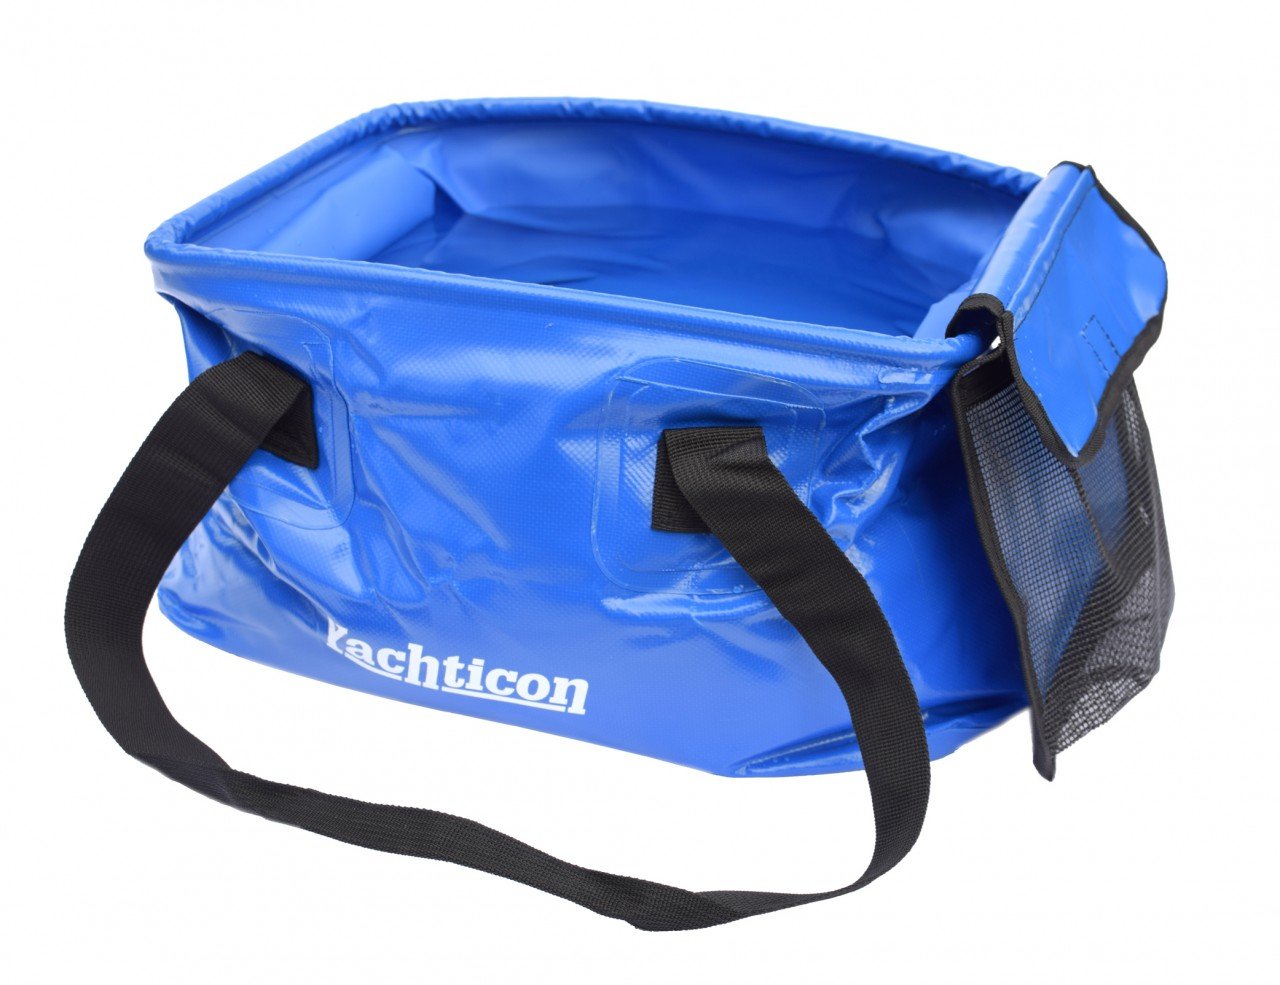 YACHTICON Faltschüssel mit Seitentasche